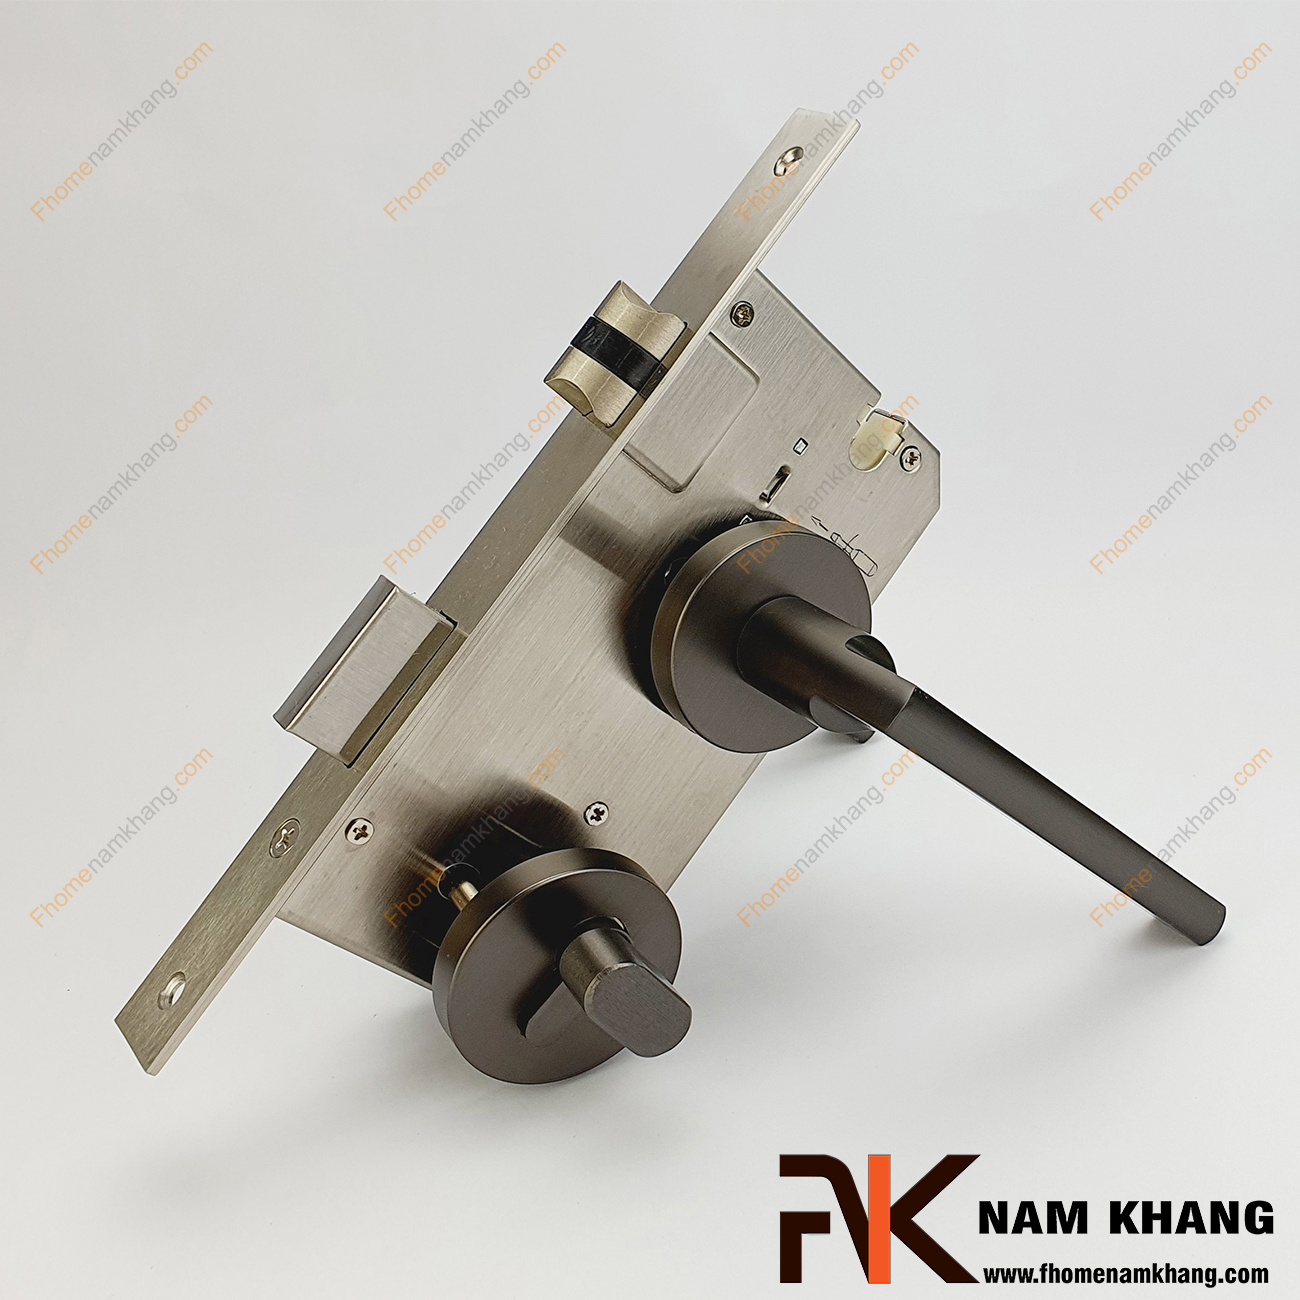 Khóa cửa phân thể dạng trơn bằng hợp kim cao cấp NK571-X có thiết kế nhỏ gọn, phần ốp khóa và tay gạt riêng biệt, tạo được sự nổi bật độc đáo.